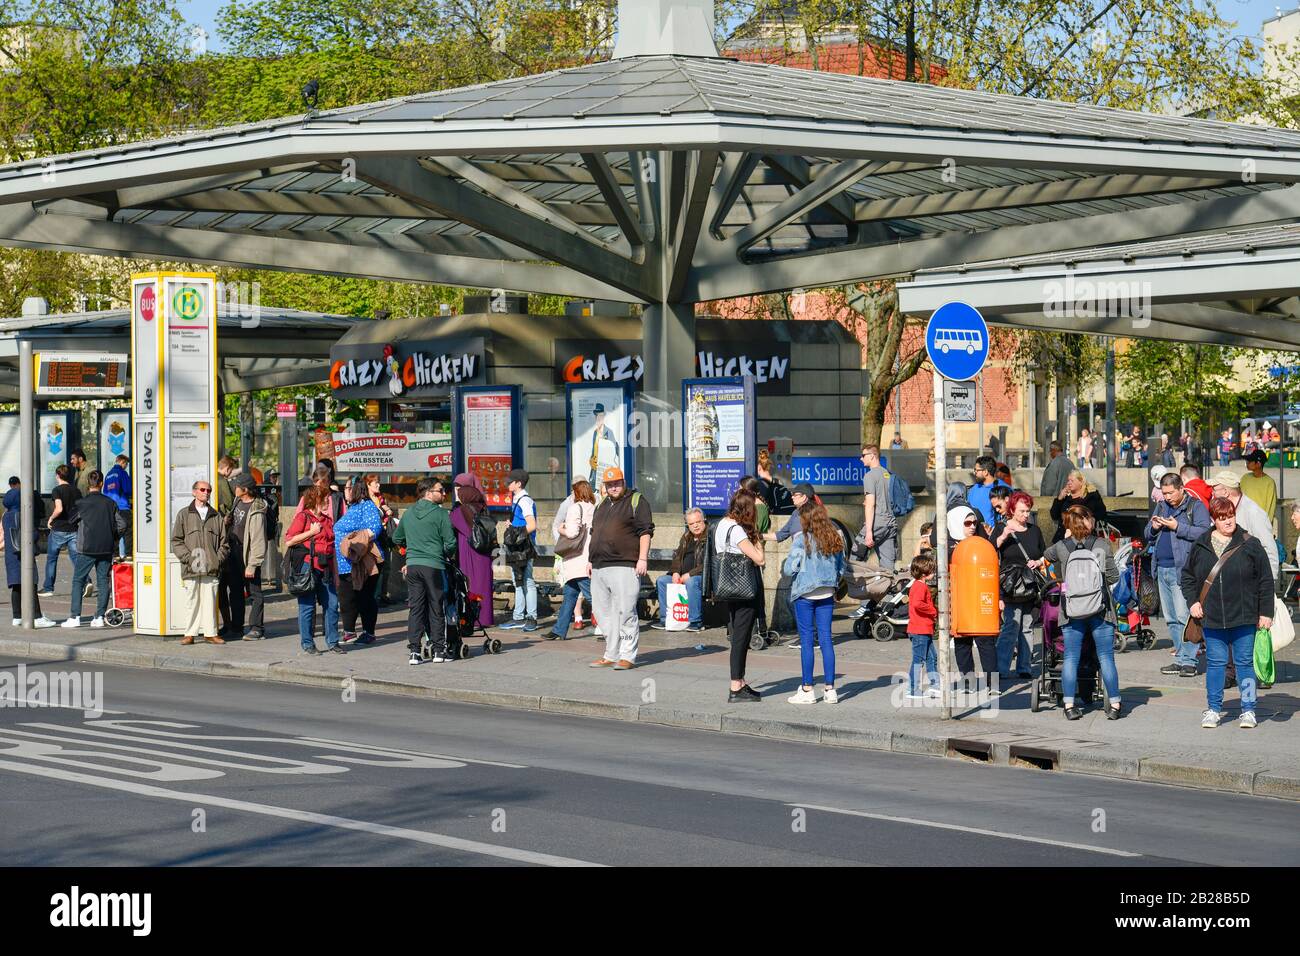 Bushaltestelle, Altstädter Ring, Spandau, Berlin, Deutschland Stock Photo